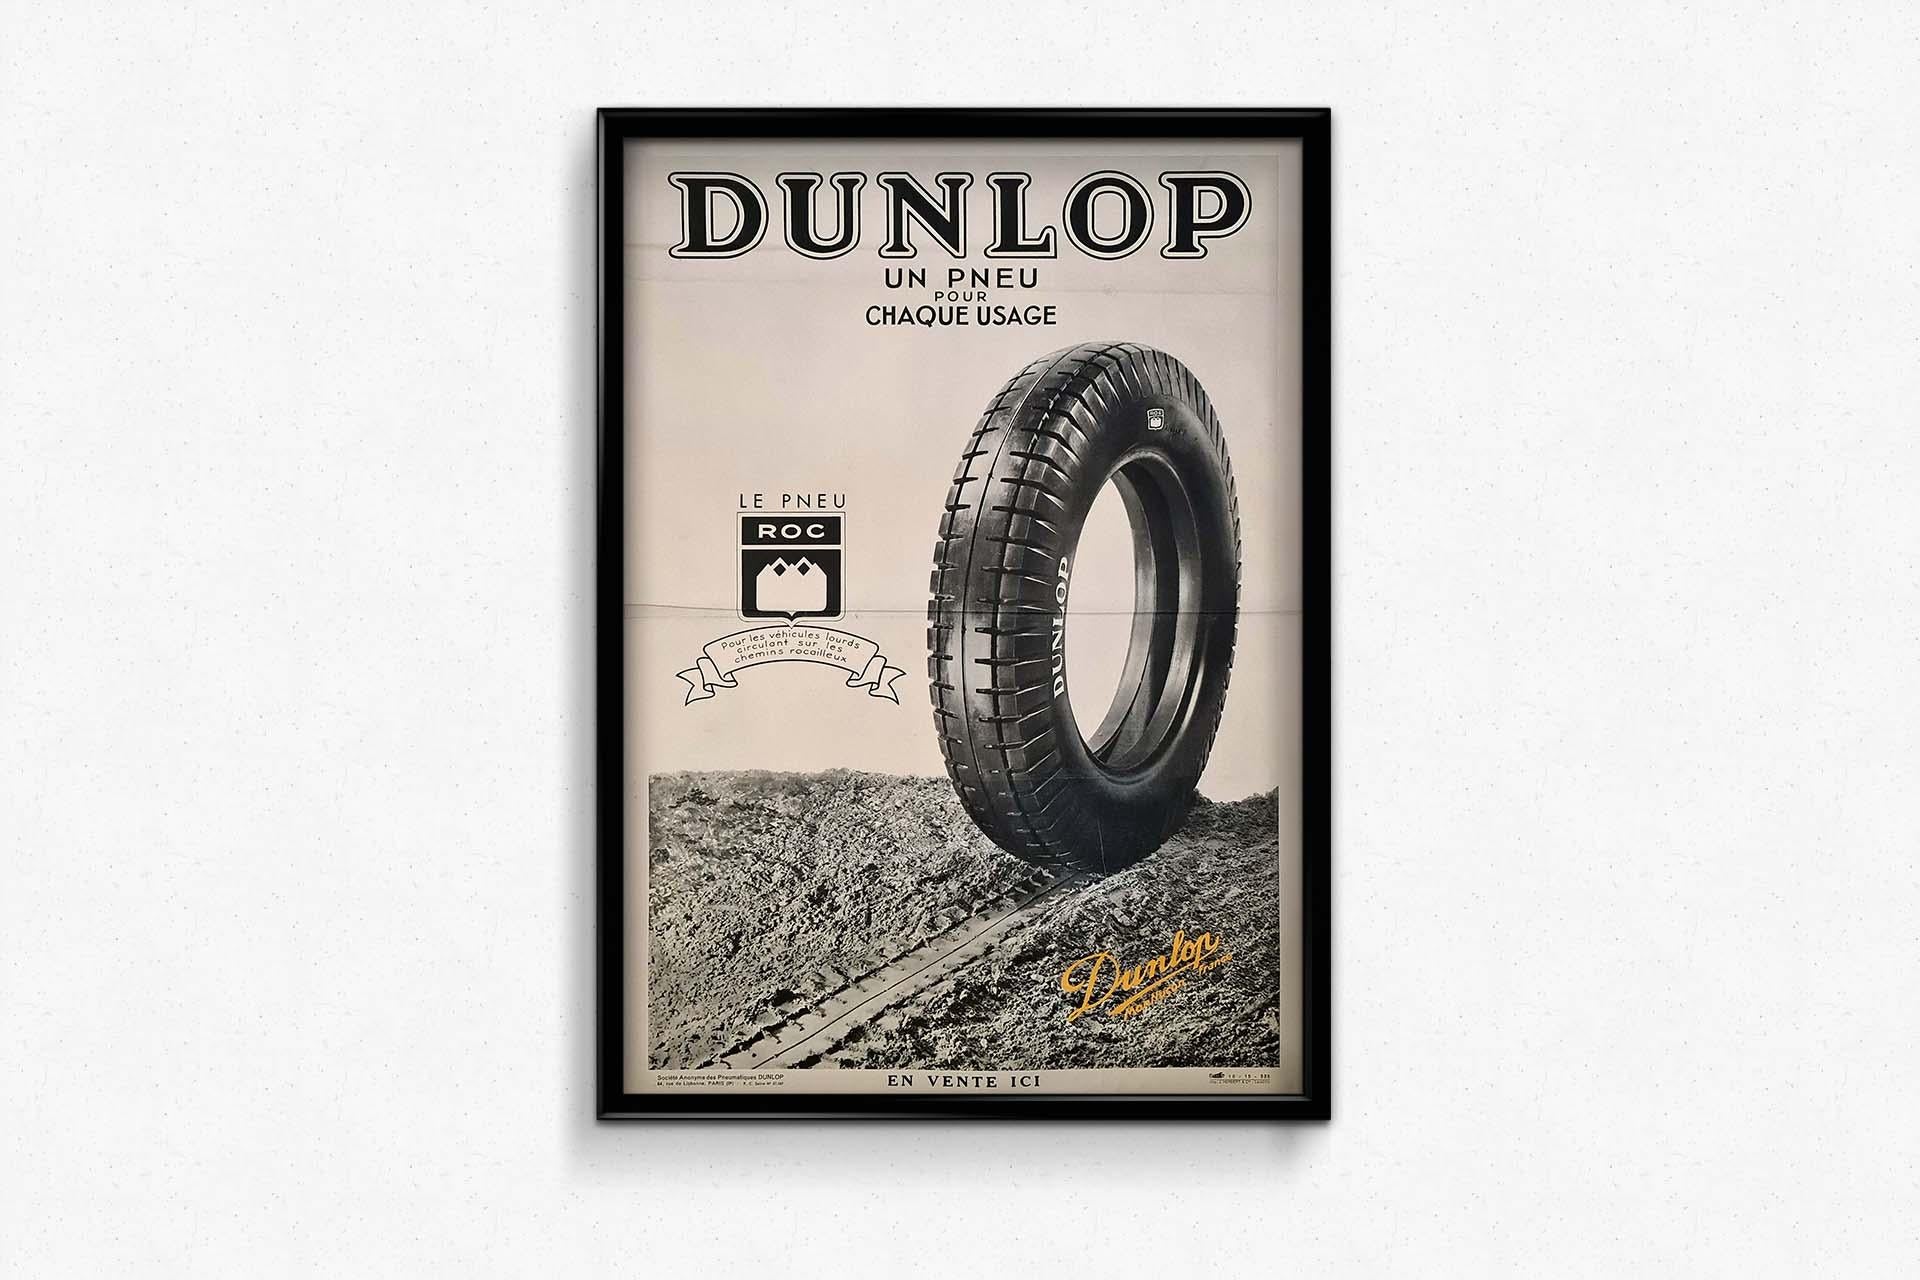 Das Original-Werbeplakat von Dunlop aus dem Jahr 1935 stellt den 